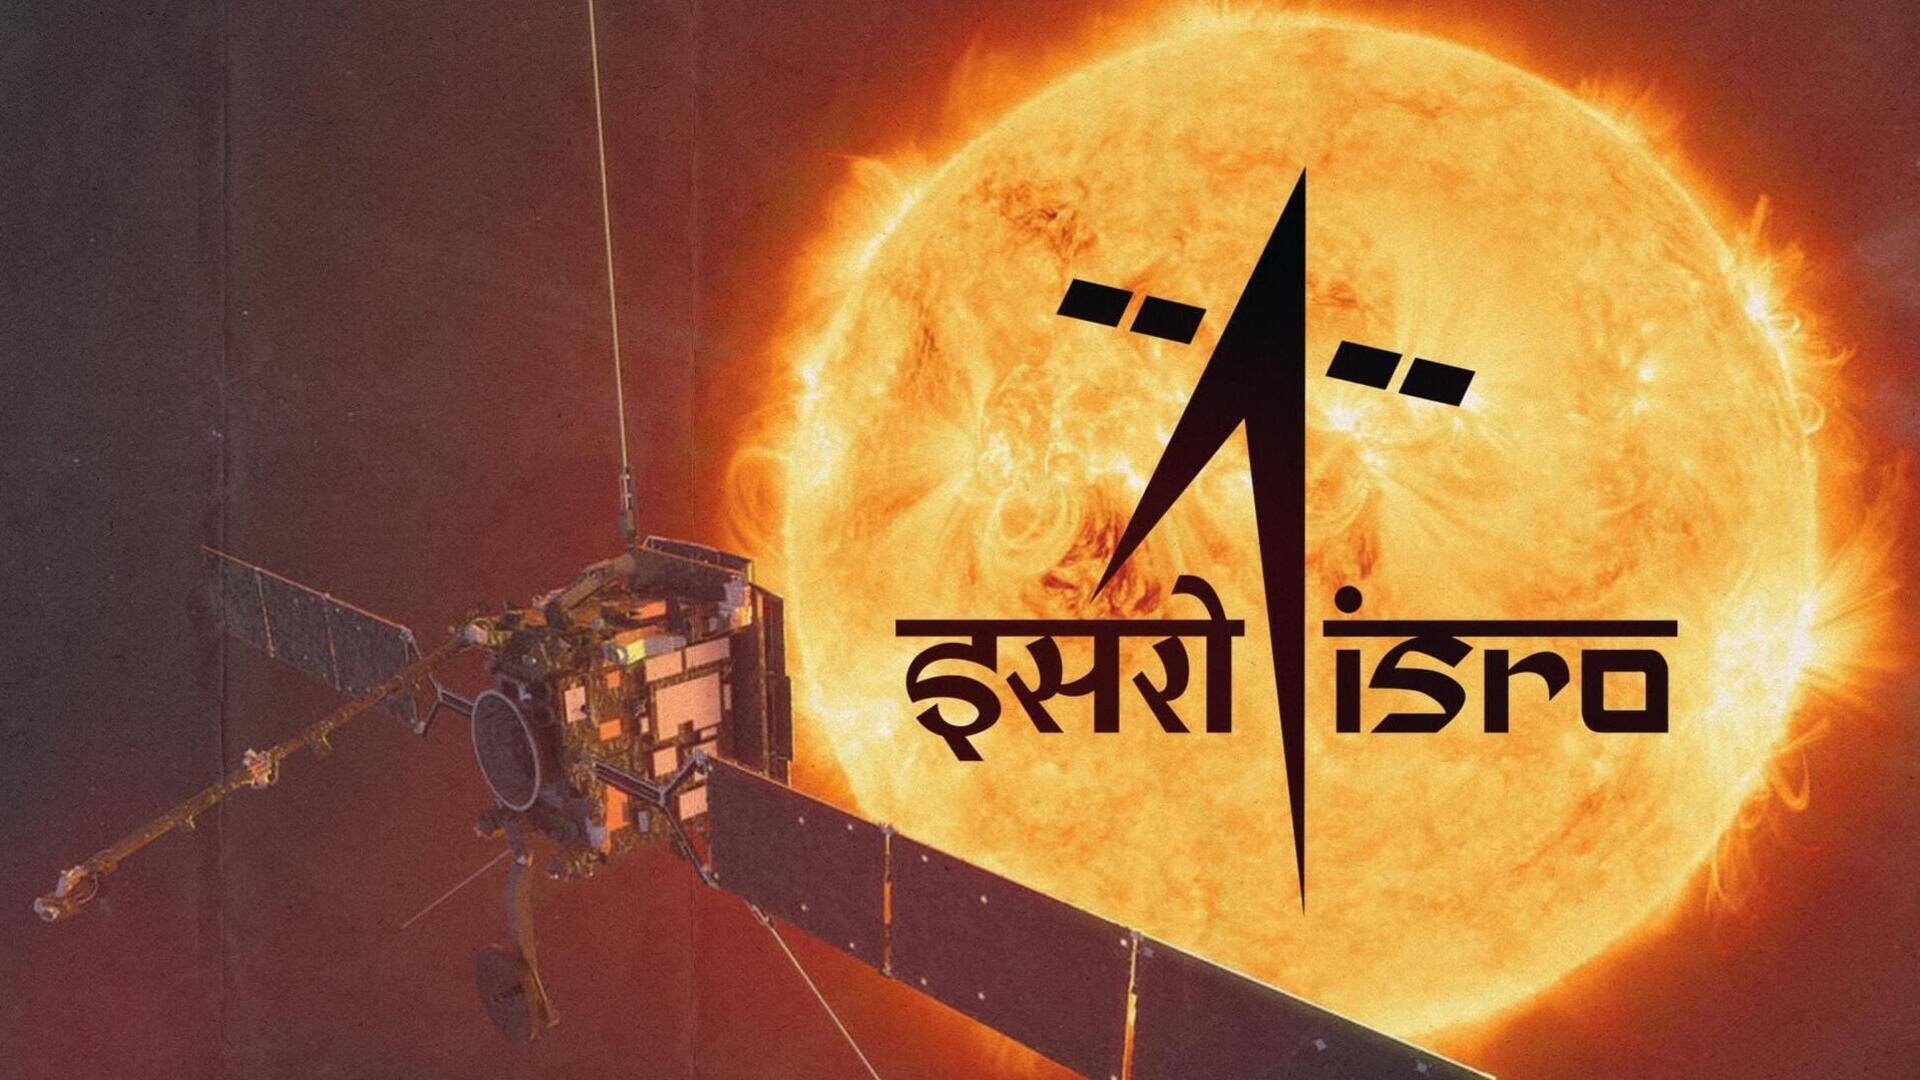 आदित्य-L1 मिशन: पृथ्वी के प्रभाव क्षेत्र से बाहर निकला यान, ISRO ने दी अपडेट